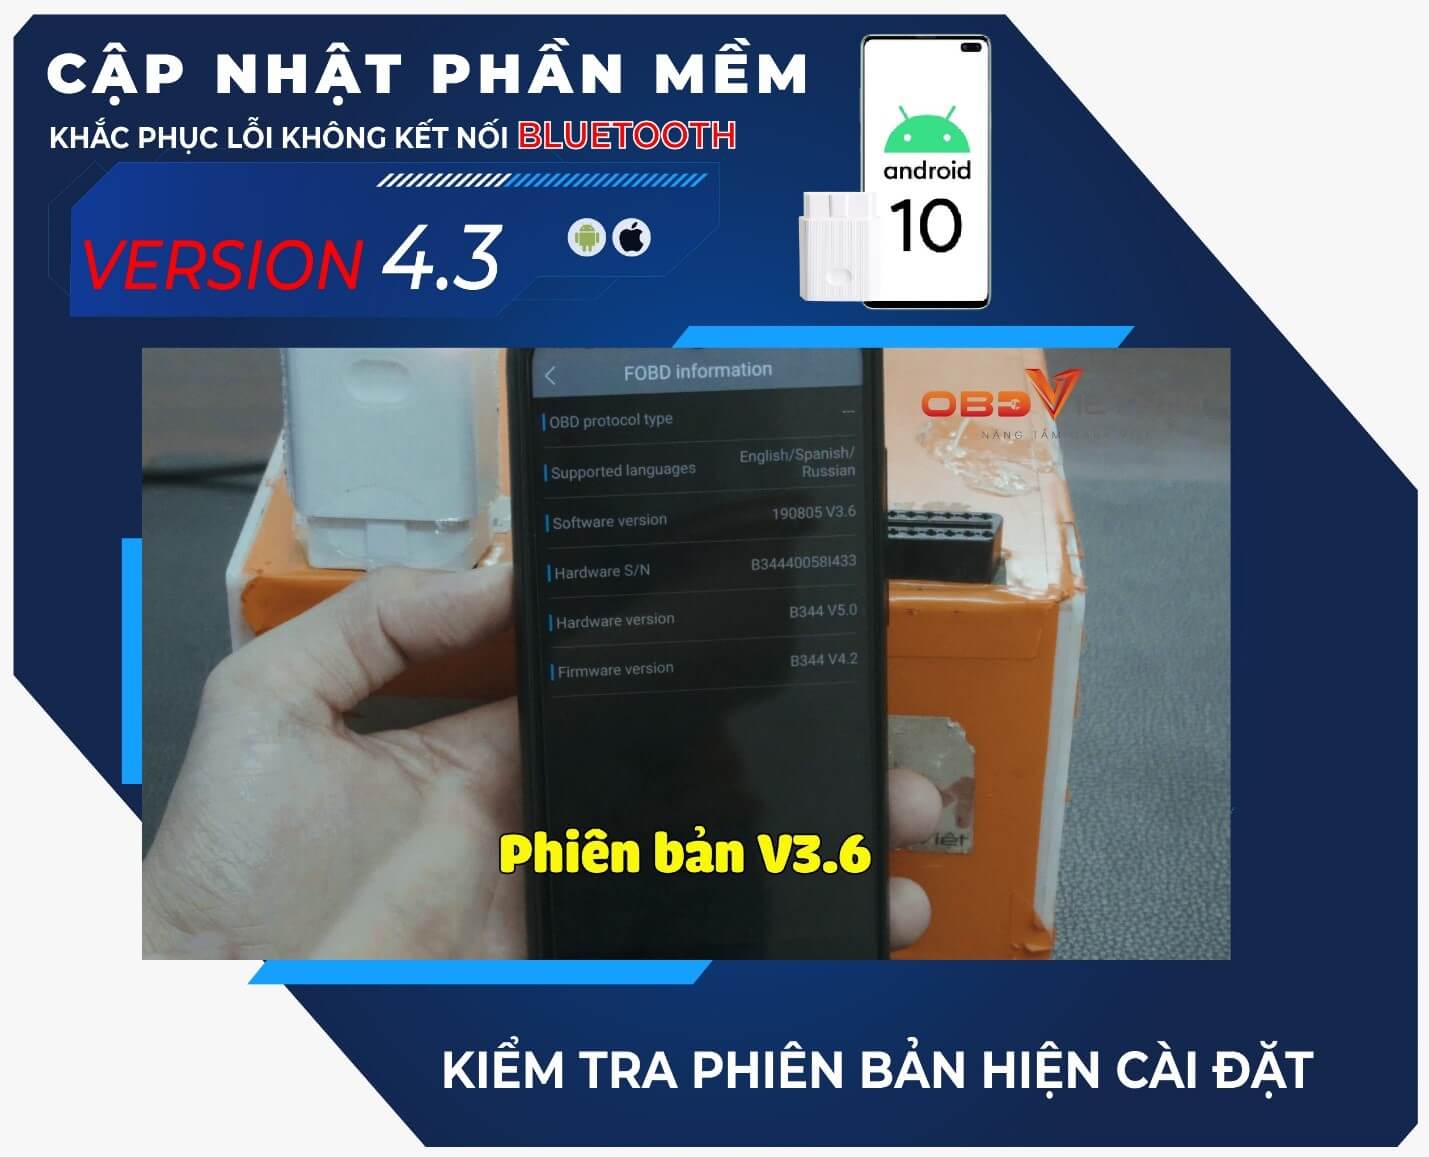 cap-nhat-phan-mem-v4.3-cho-may-chan-doan-fobd11